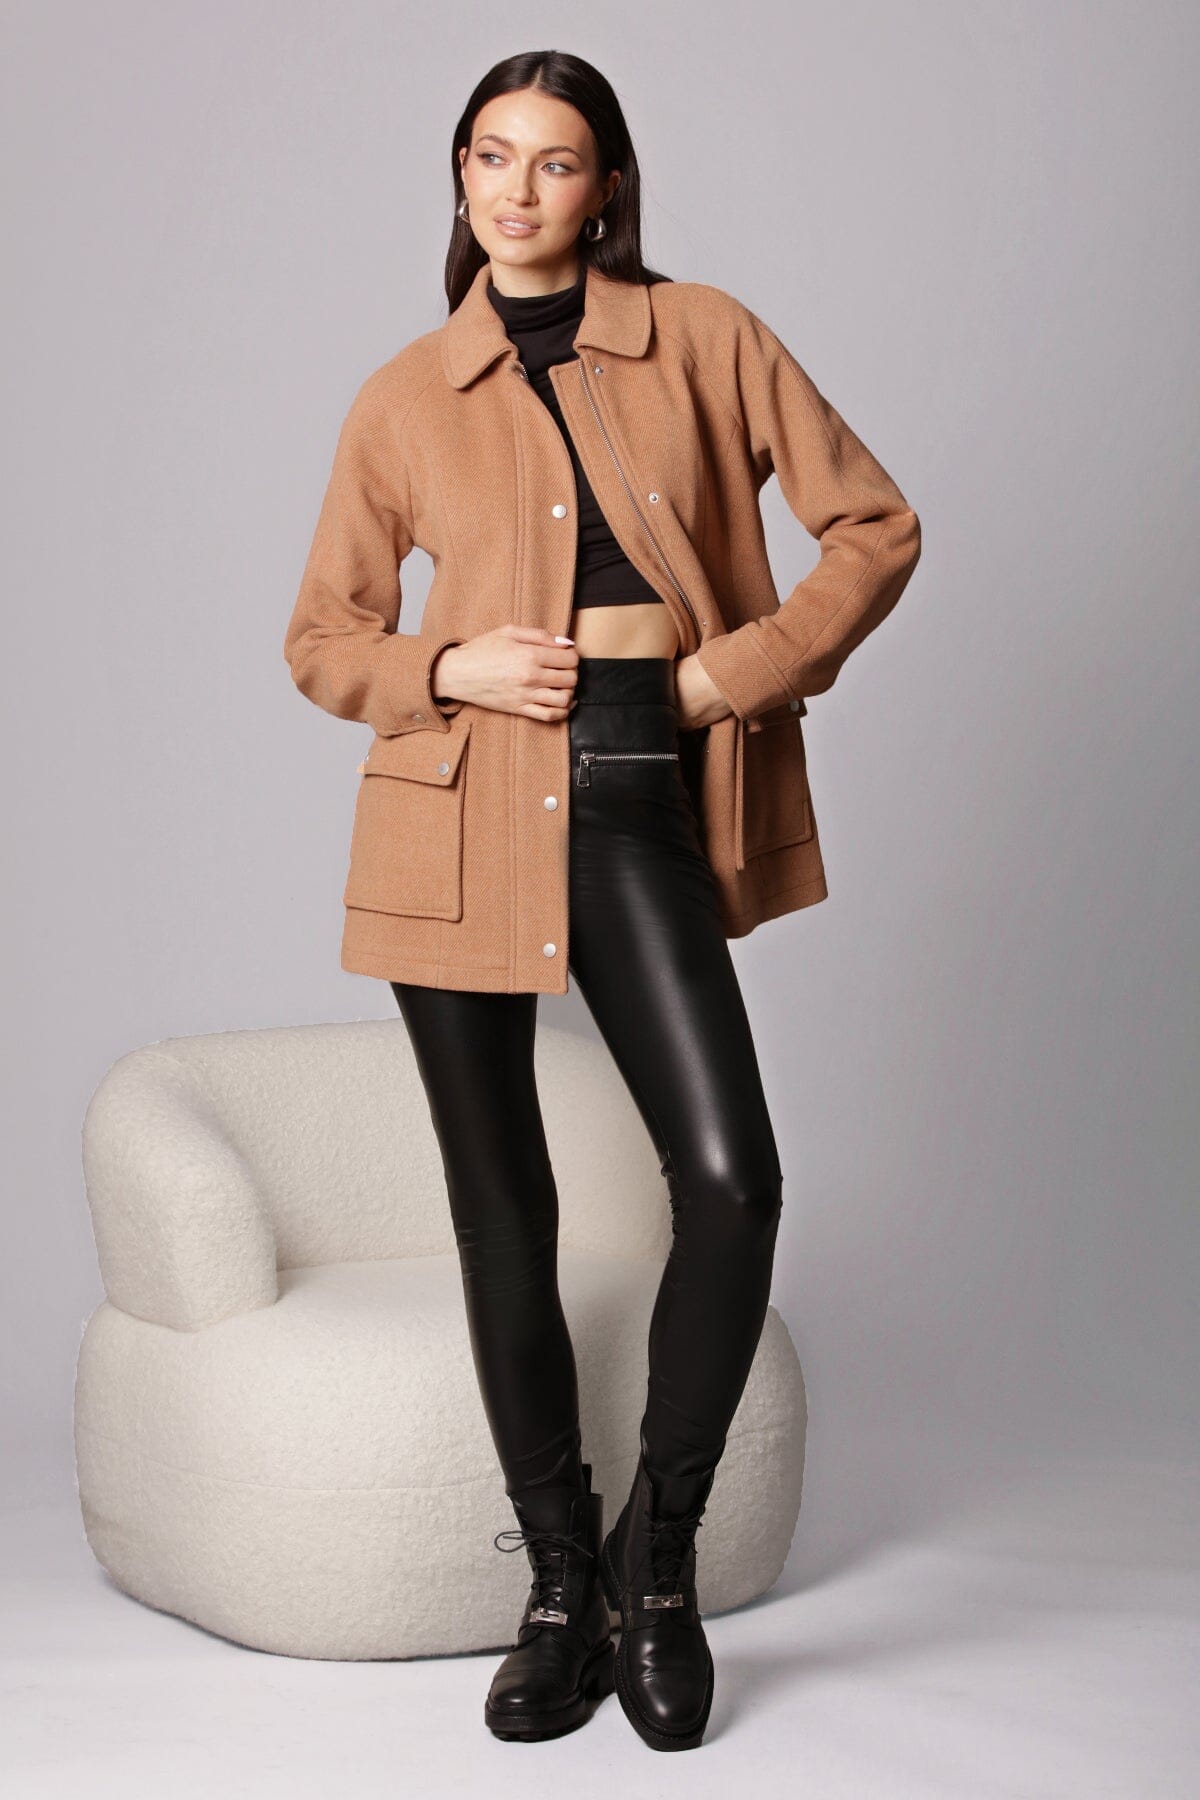 Light brown twill wool blend zip-front jacket coat outerwear - women's figure flattering streetwear style jackets outerwear for fall fashion